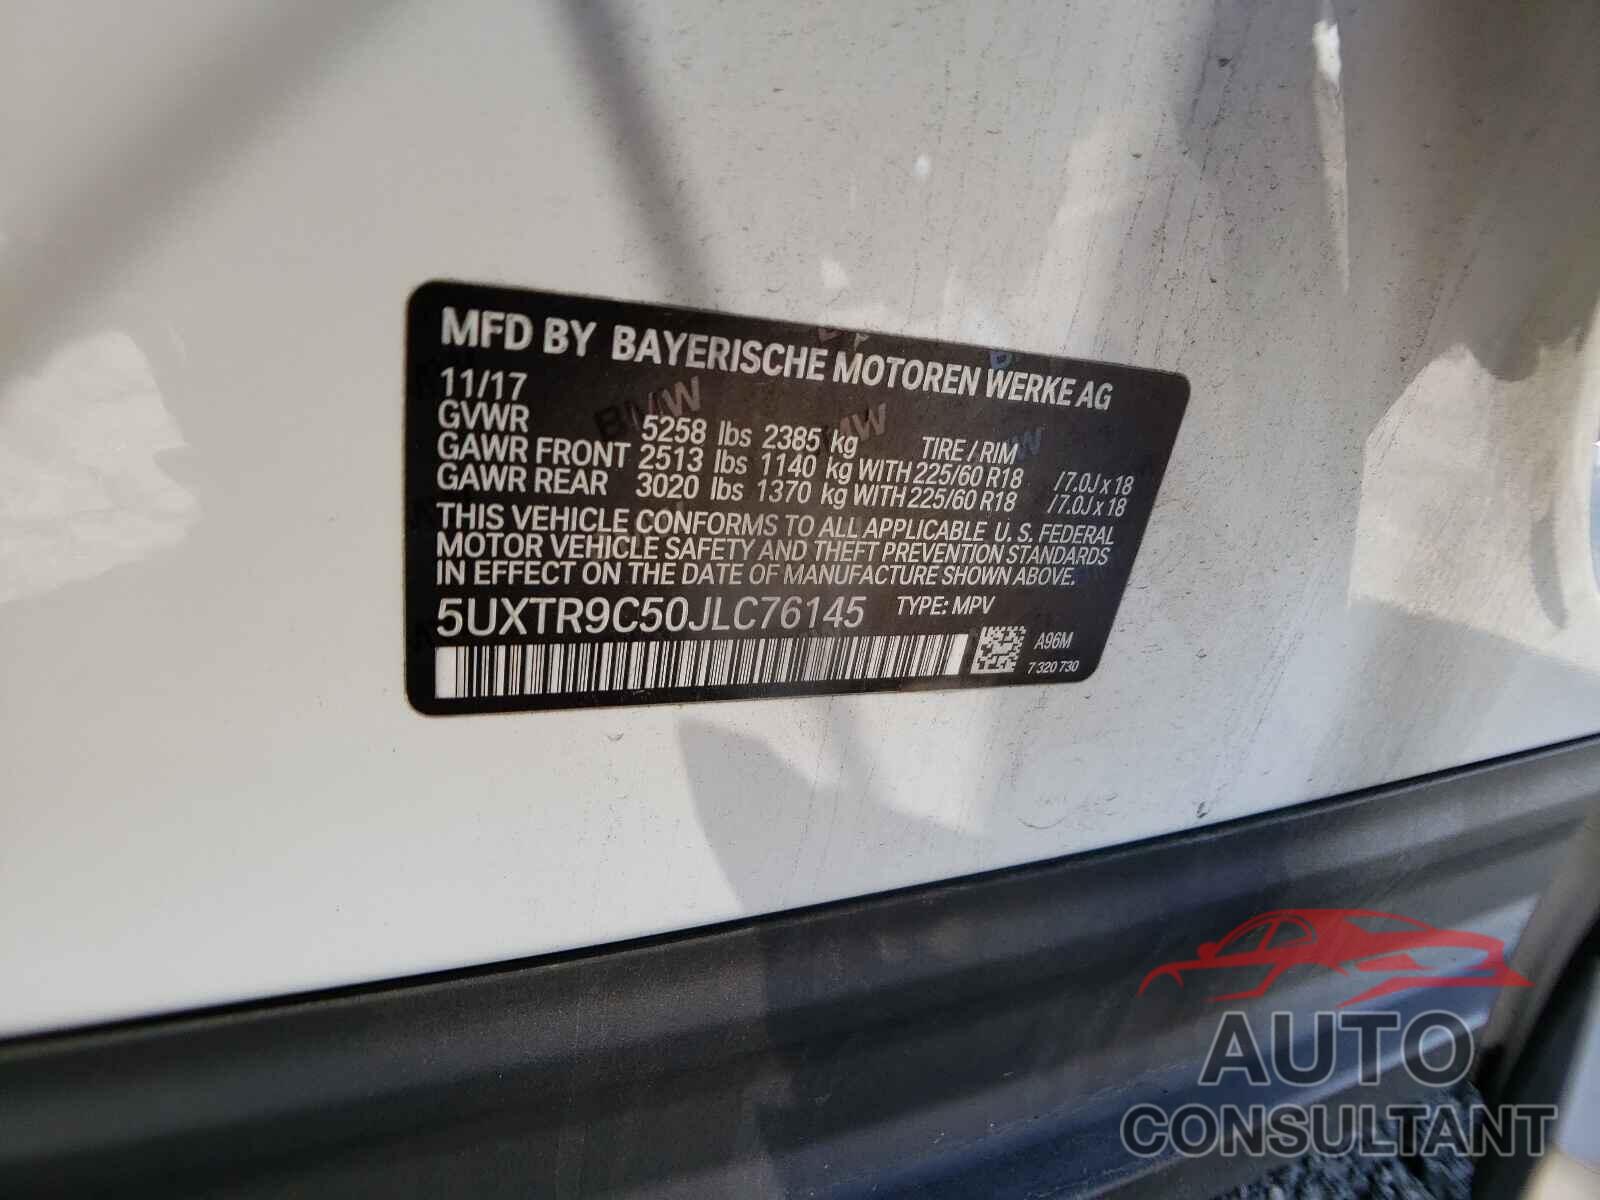 BMW X3 2018 - 5UXTR9C50JLC76145